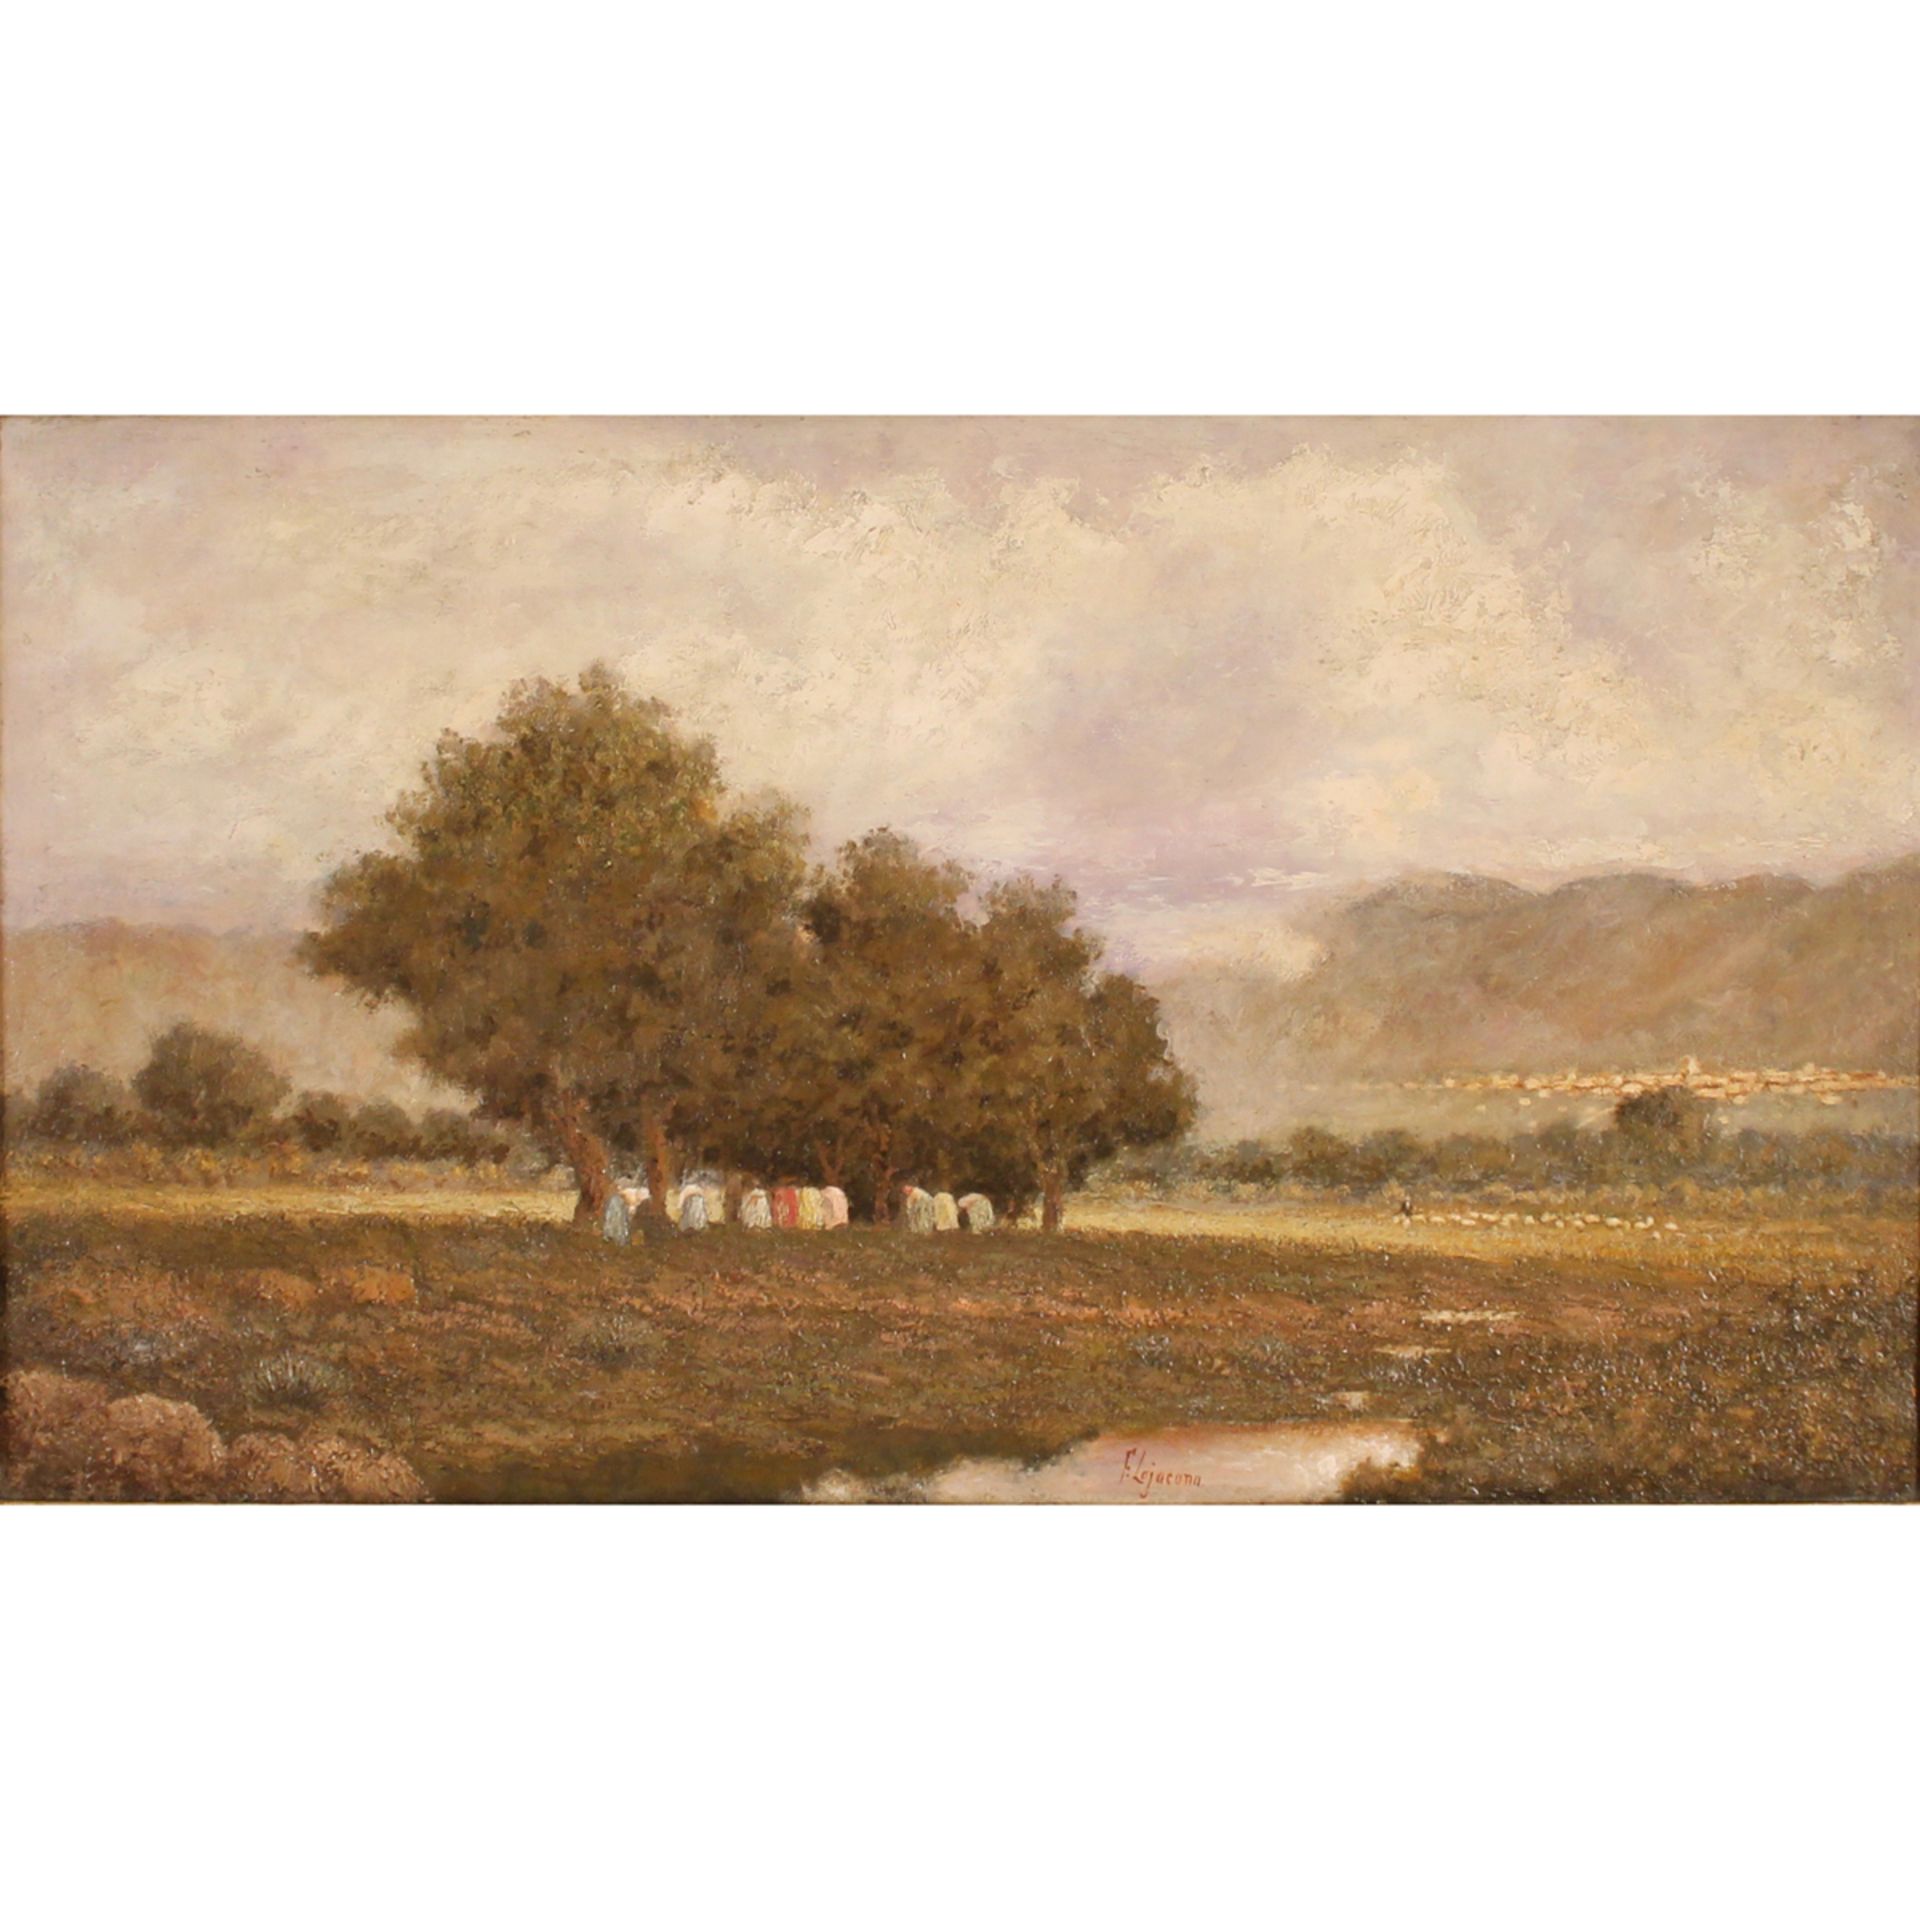 FRANCESCO LOJACONO (1838-1915) "Paesaggio lacustre con figure" - "Lake landscape with figures"